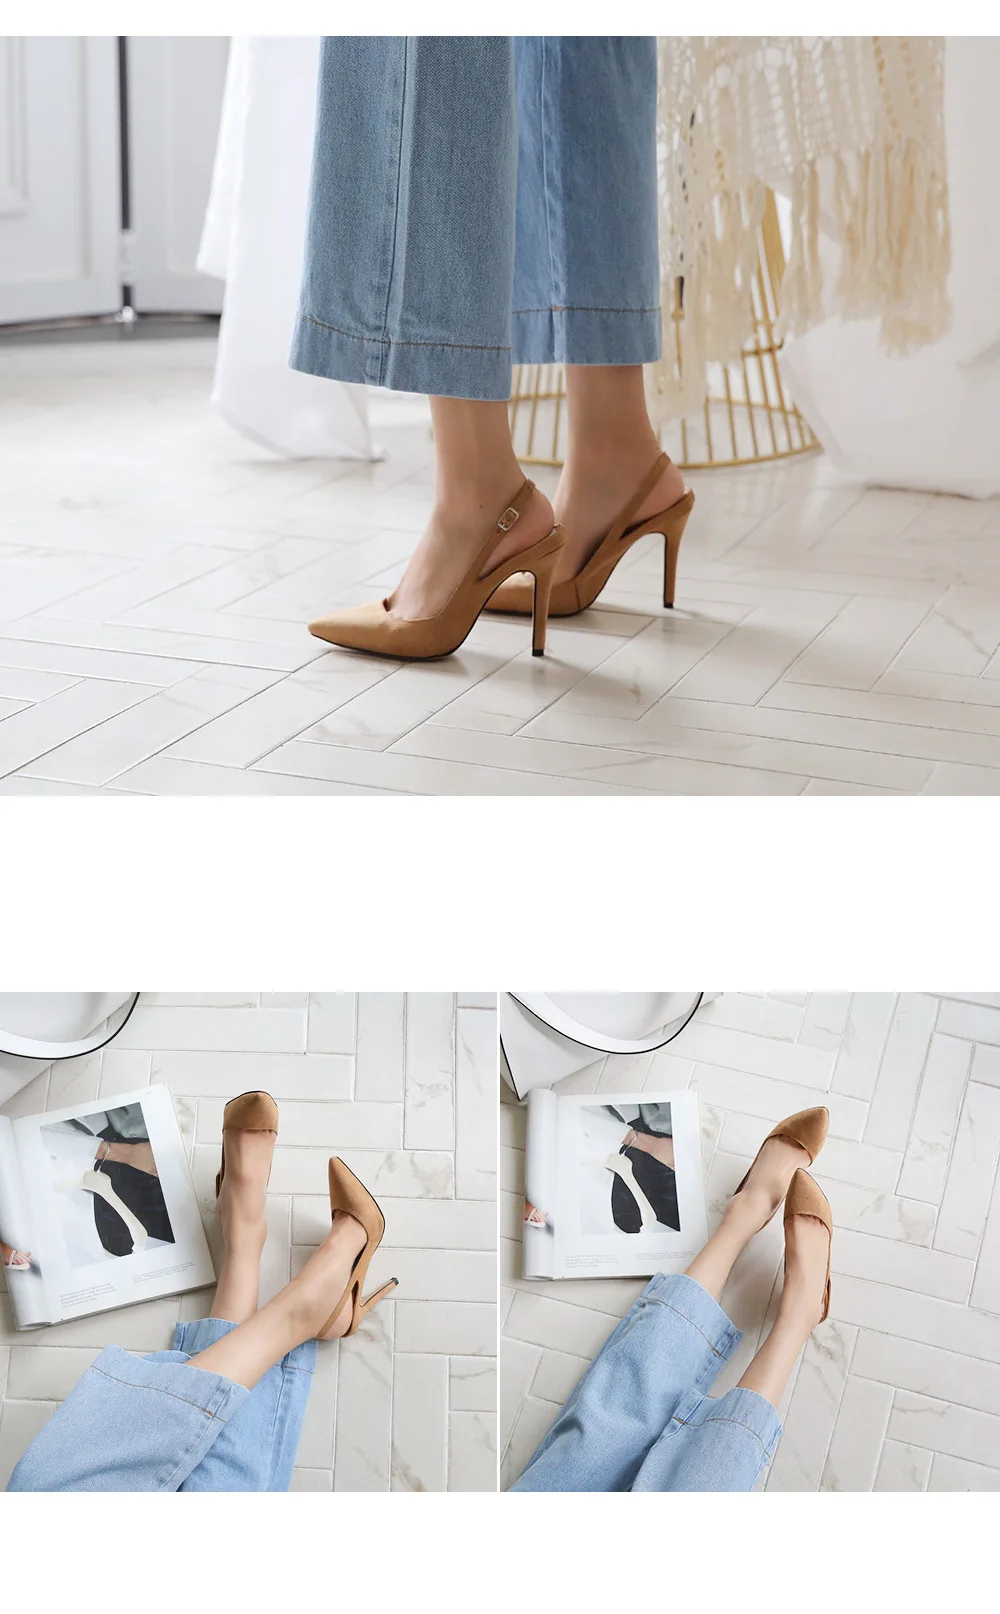 Г., летние новые стильные босоножки женские замшевые пикантные корейские модные осенние туфли на высоком каблуке